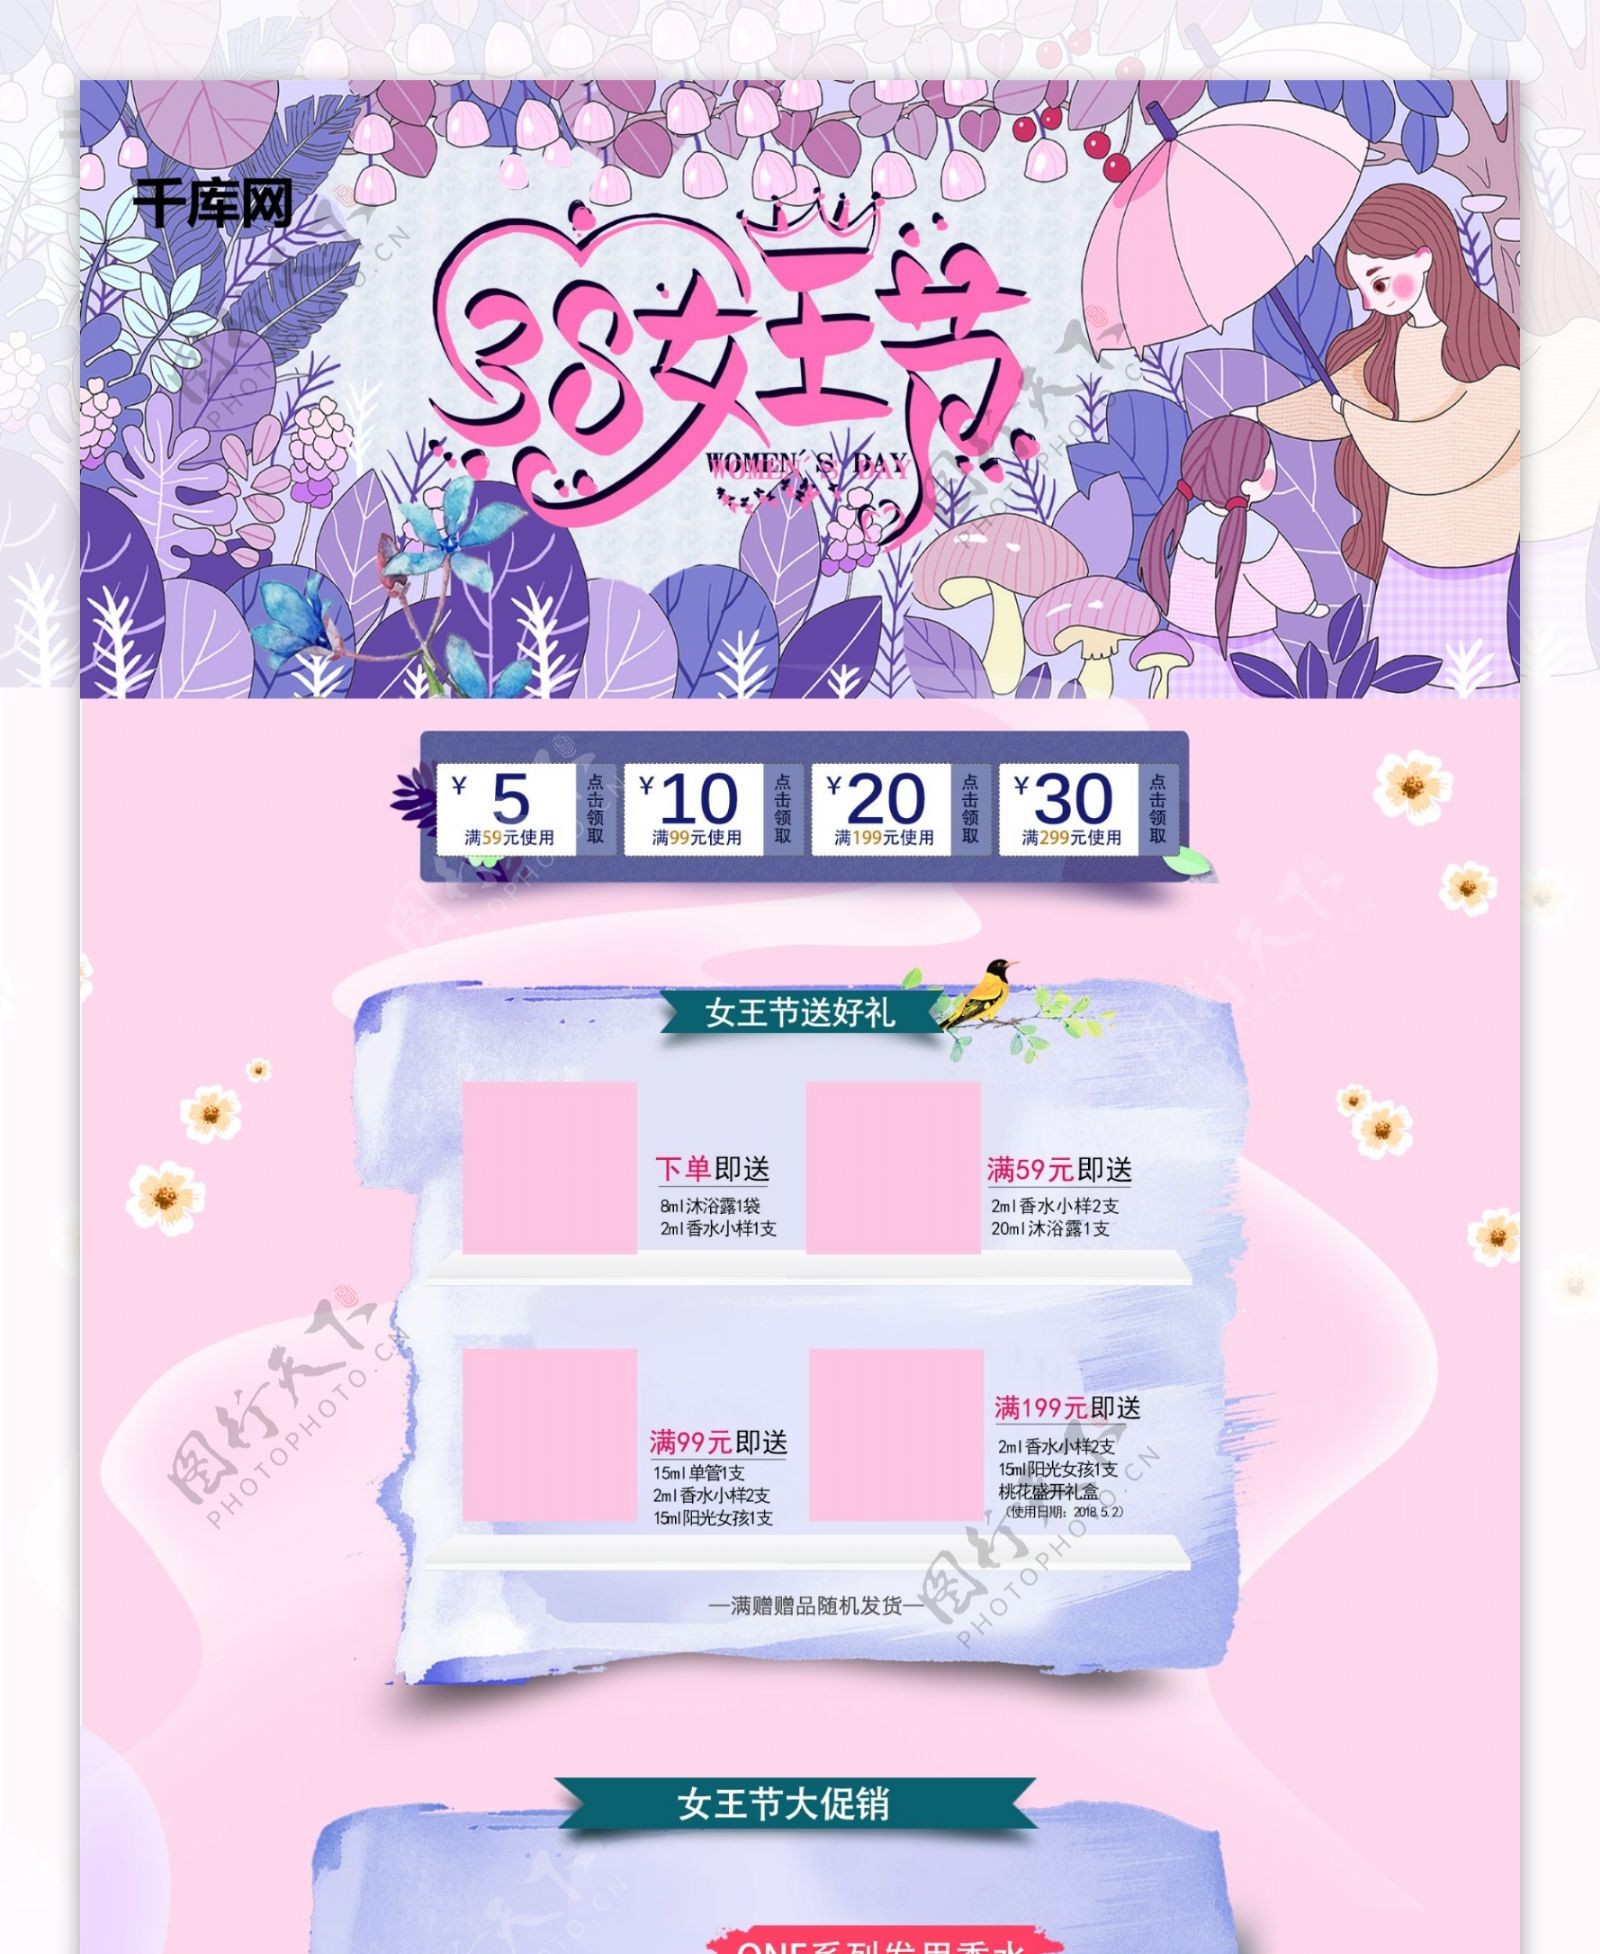 38女王节粉紫色插画电商首页模板